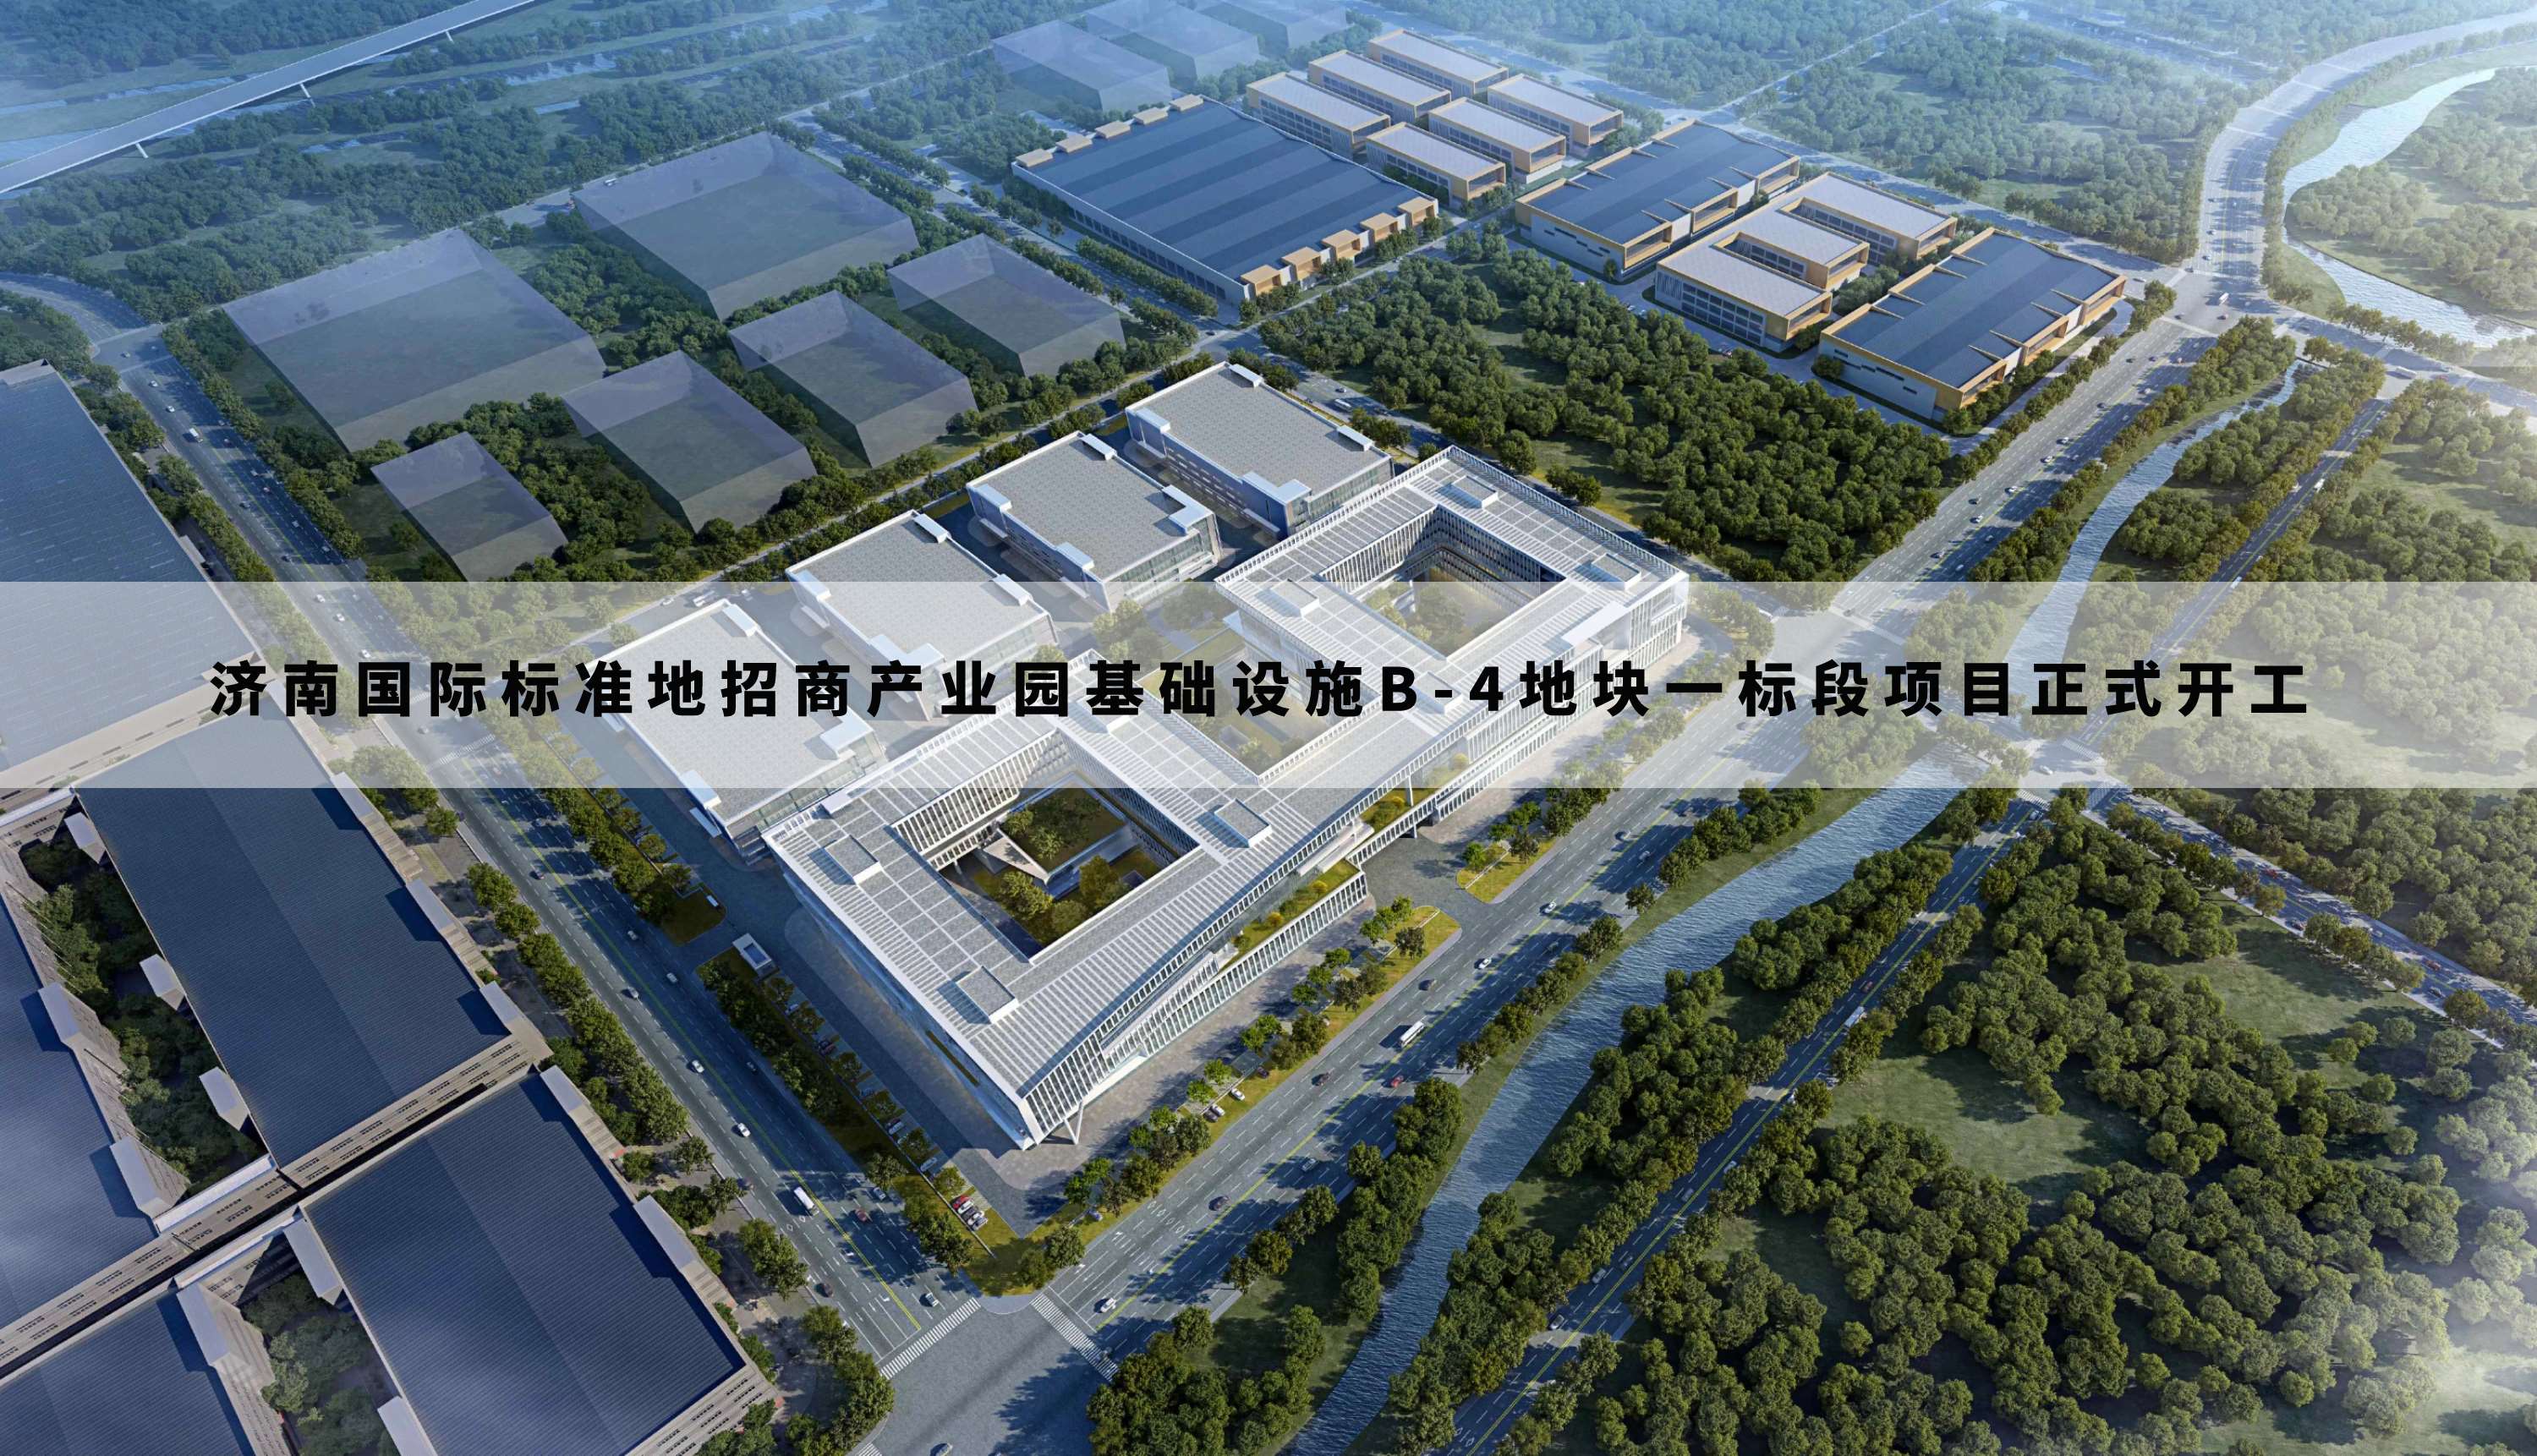 济南国际标准地招商产业园基础设施B-4地块一标段项目正式开工